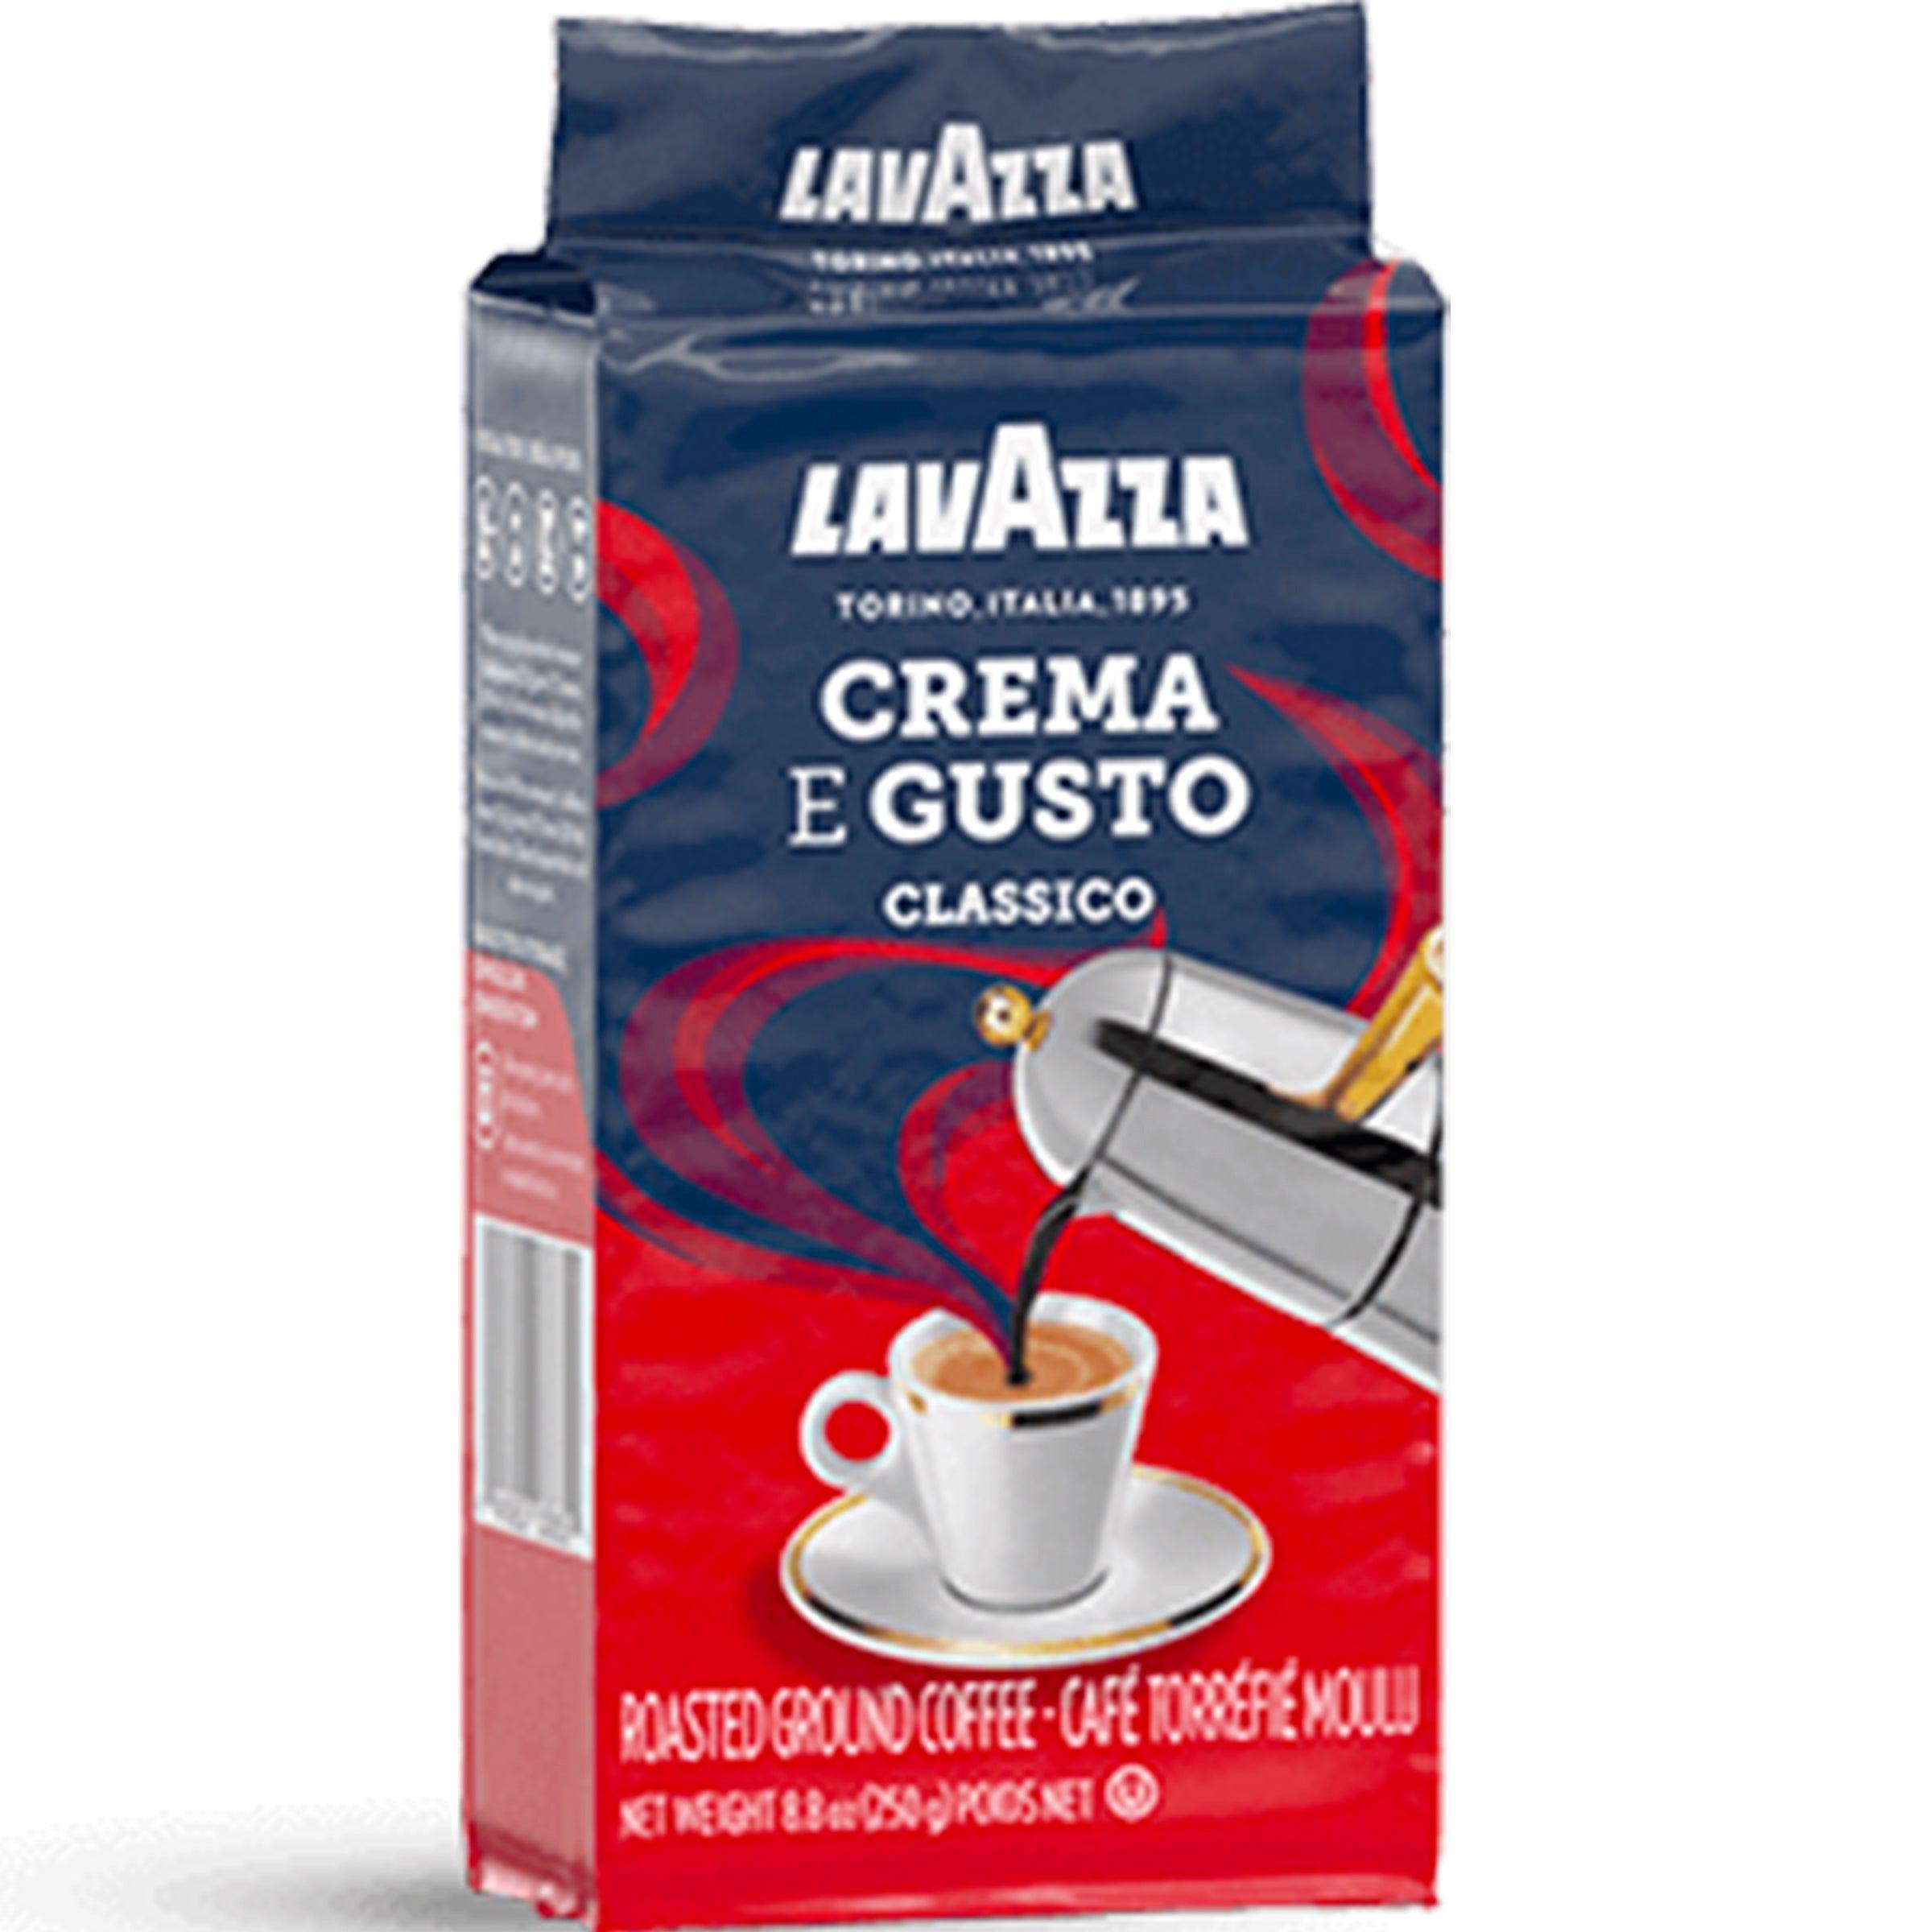 LAVAZZA CREMA E GUSTO RICCO COFFEE 250GM - Nazar Jan's Supermarket